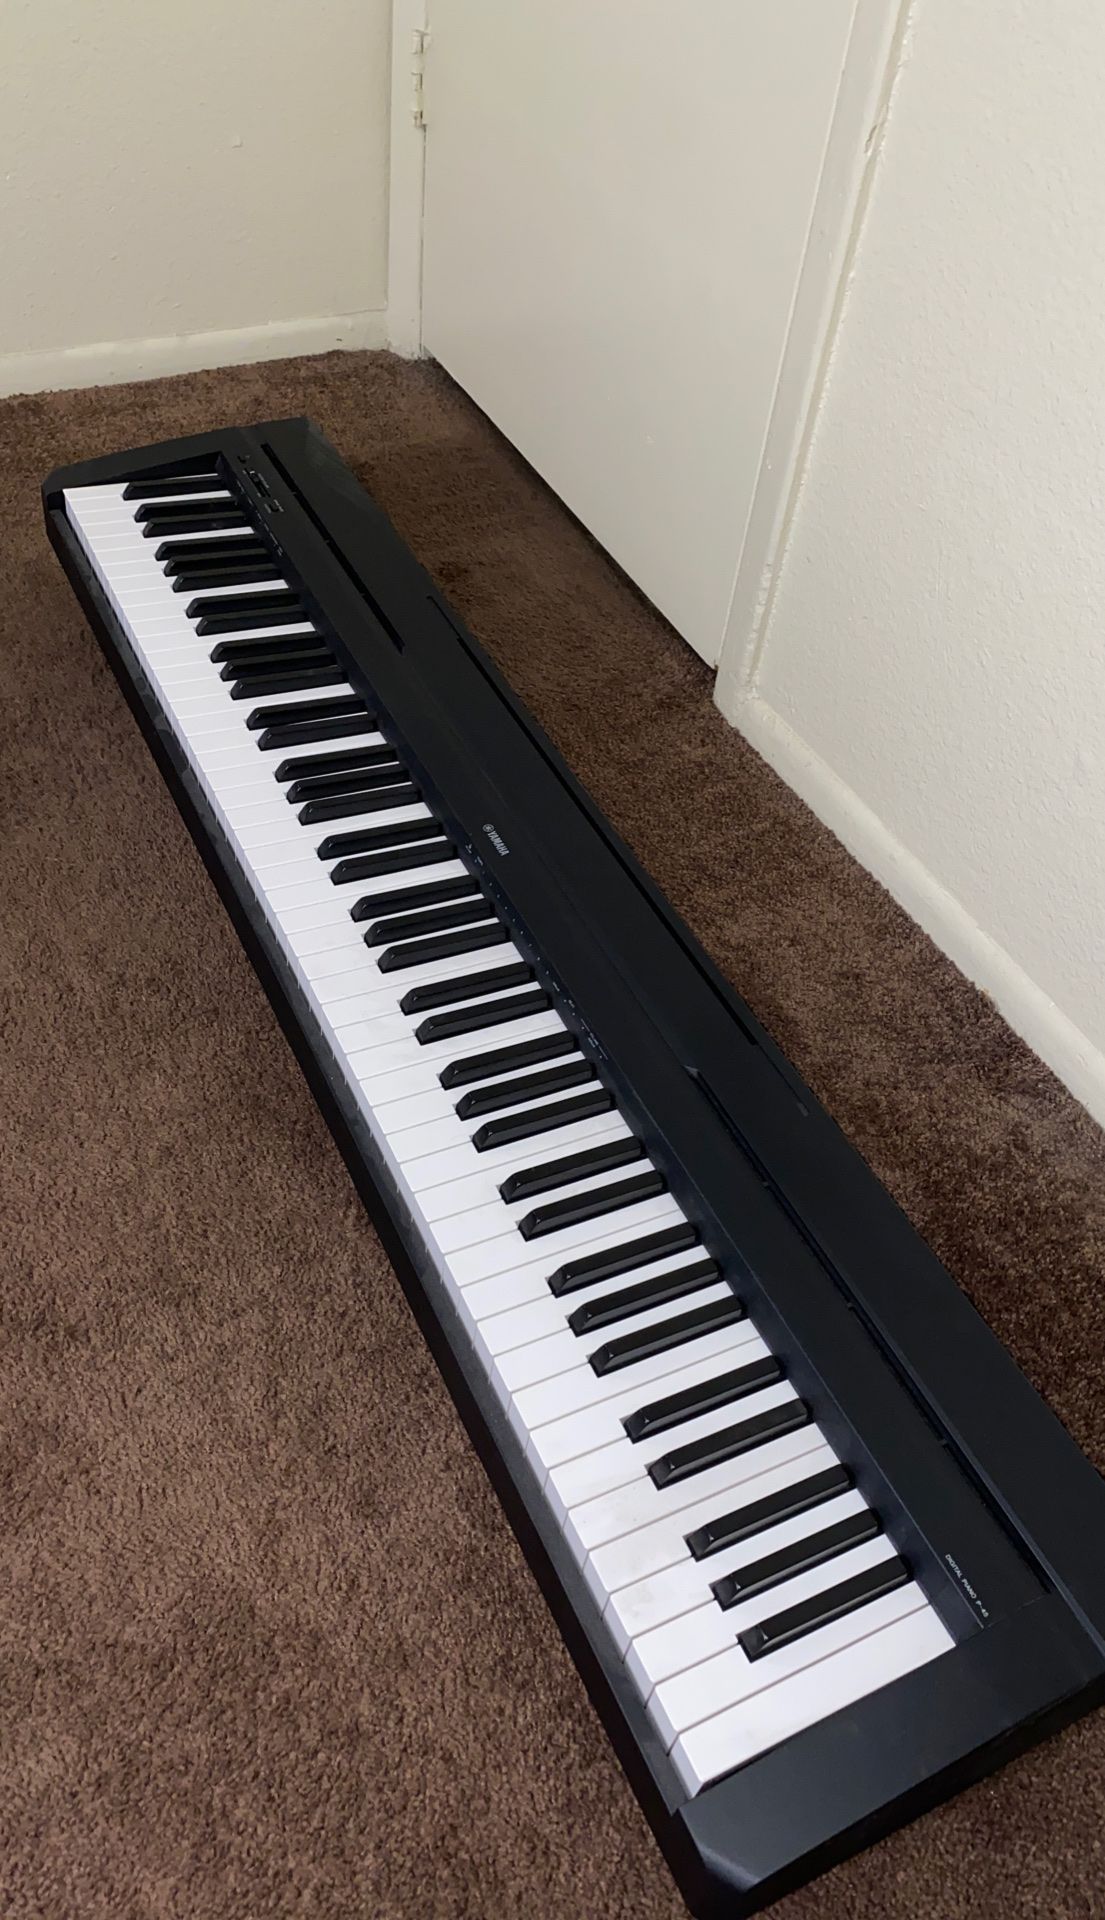 Yamaha 88-key piano